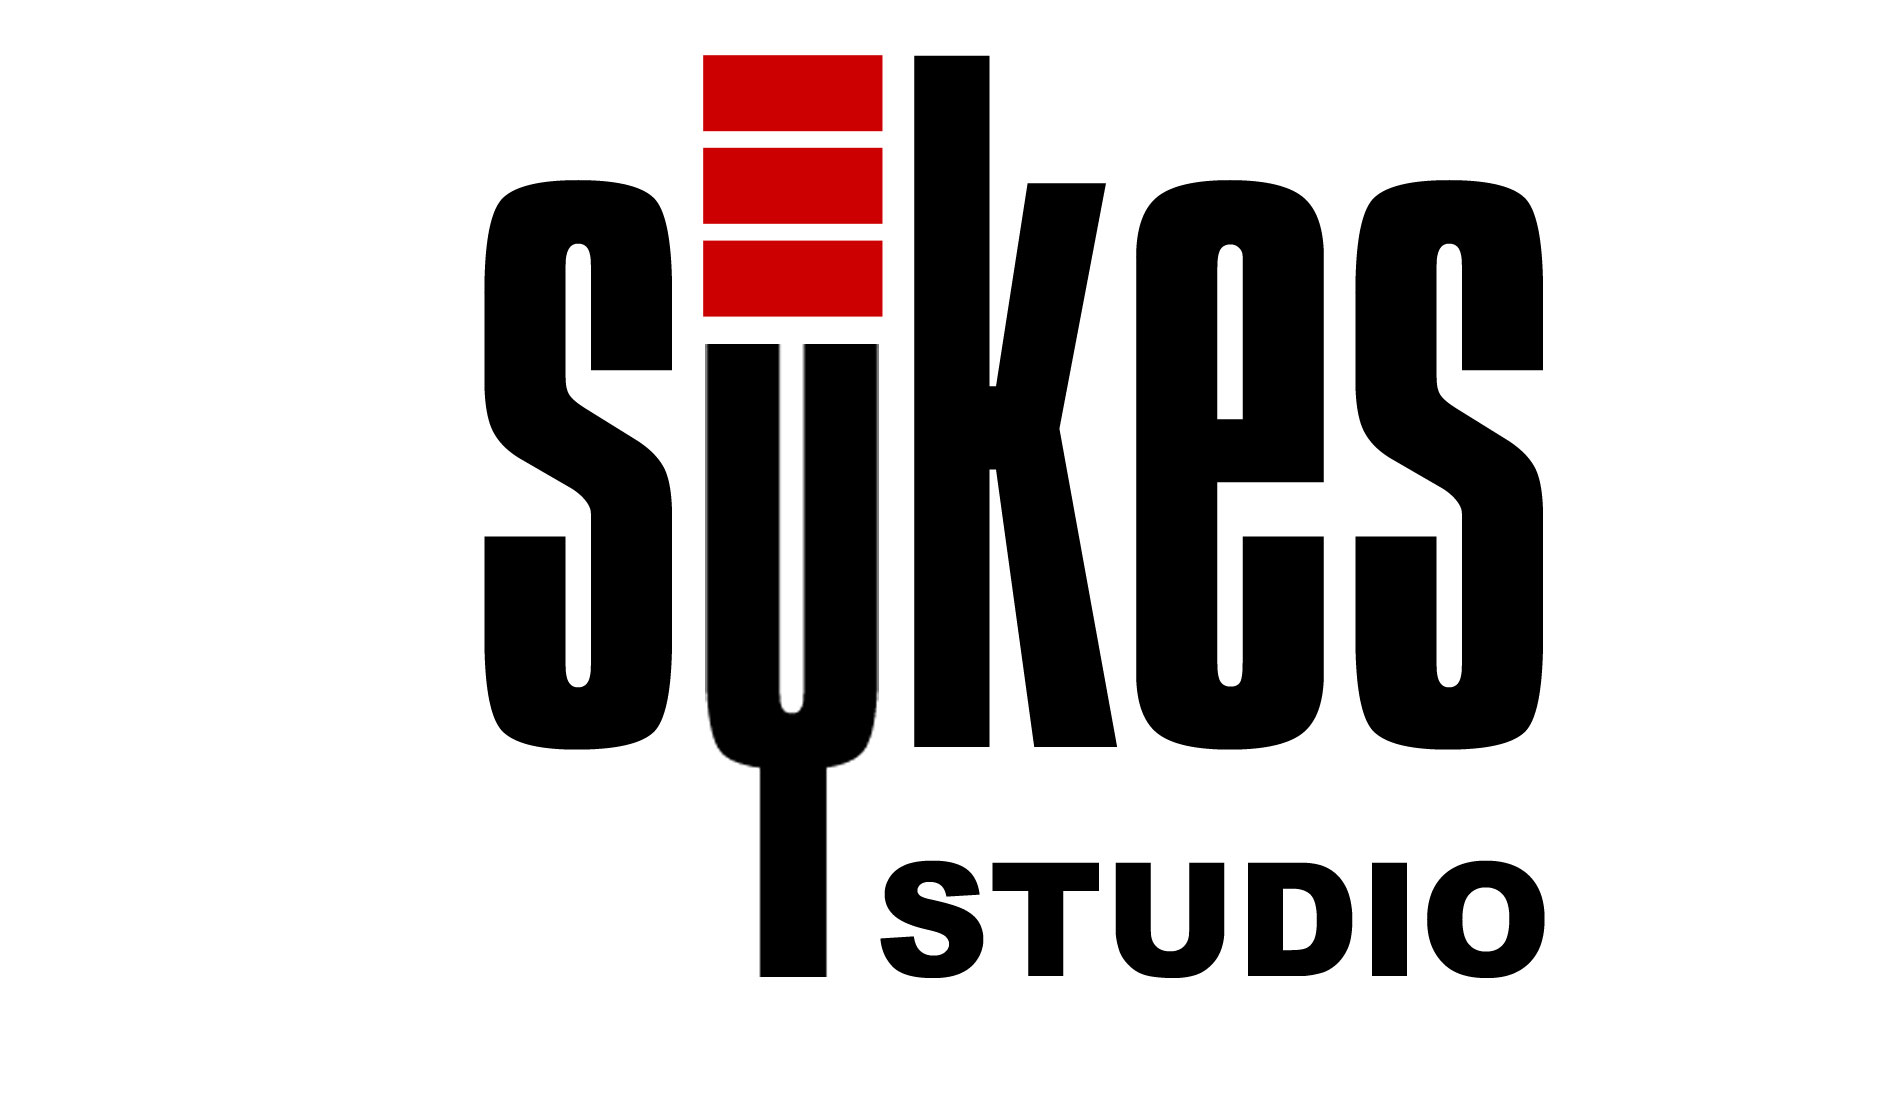 Sykes Studio